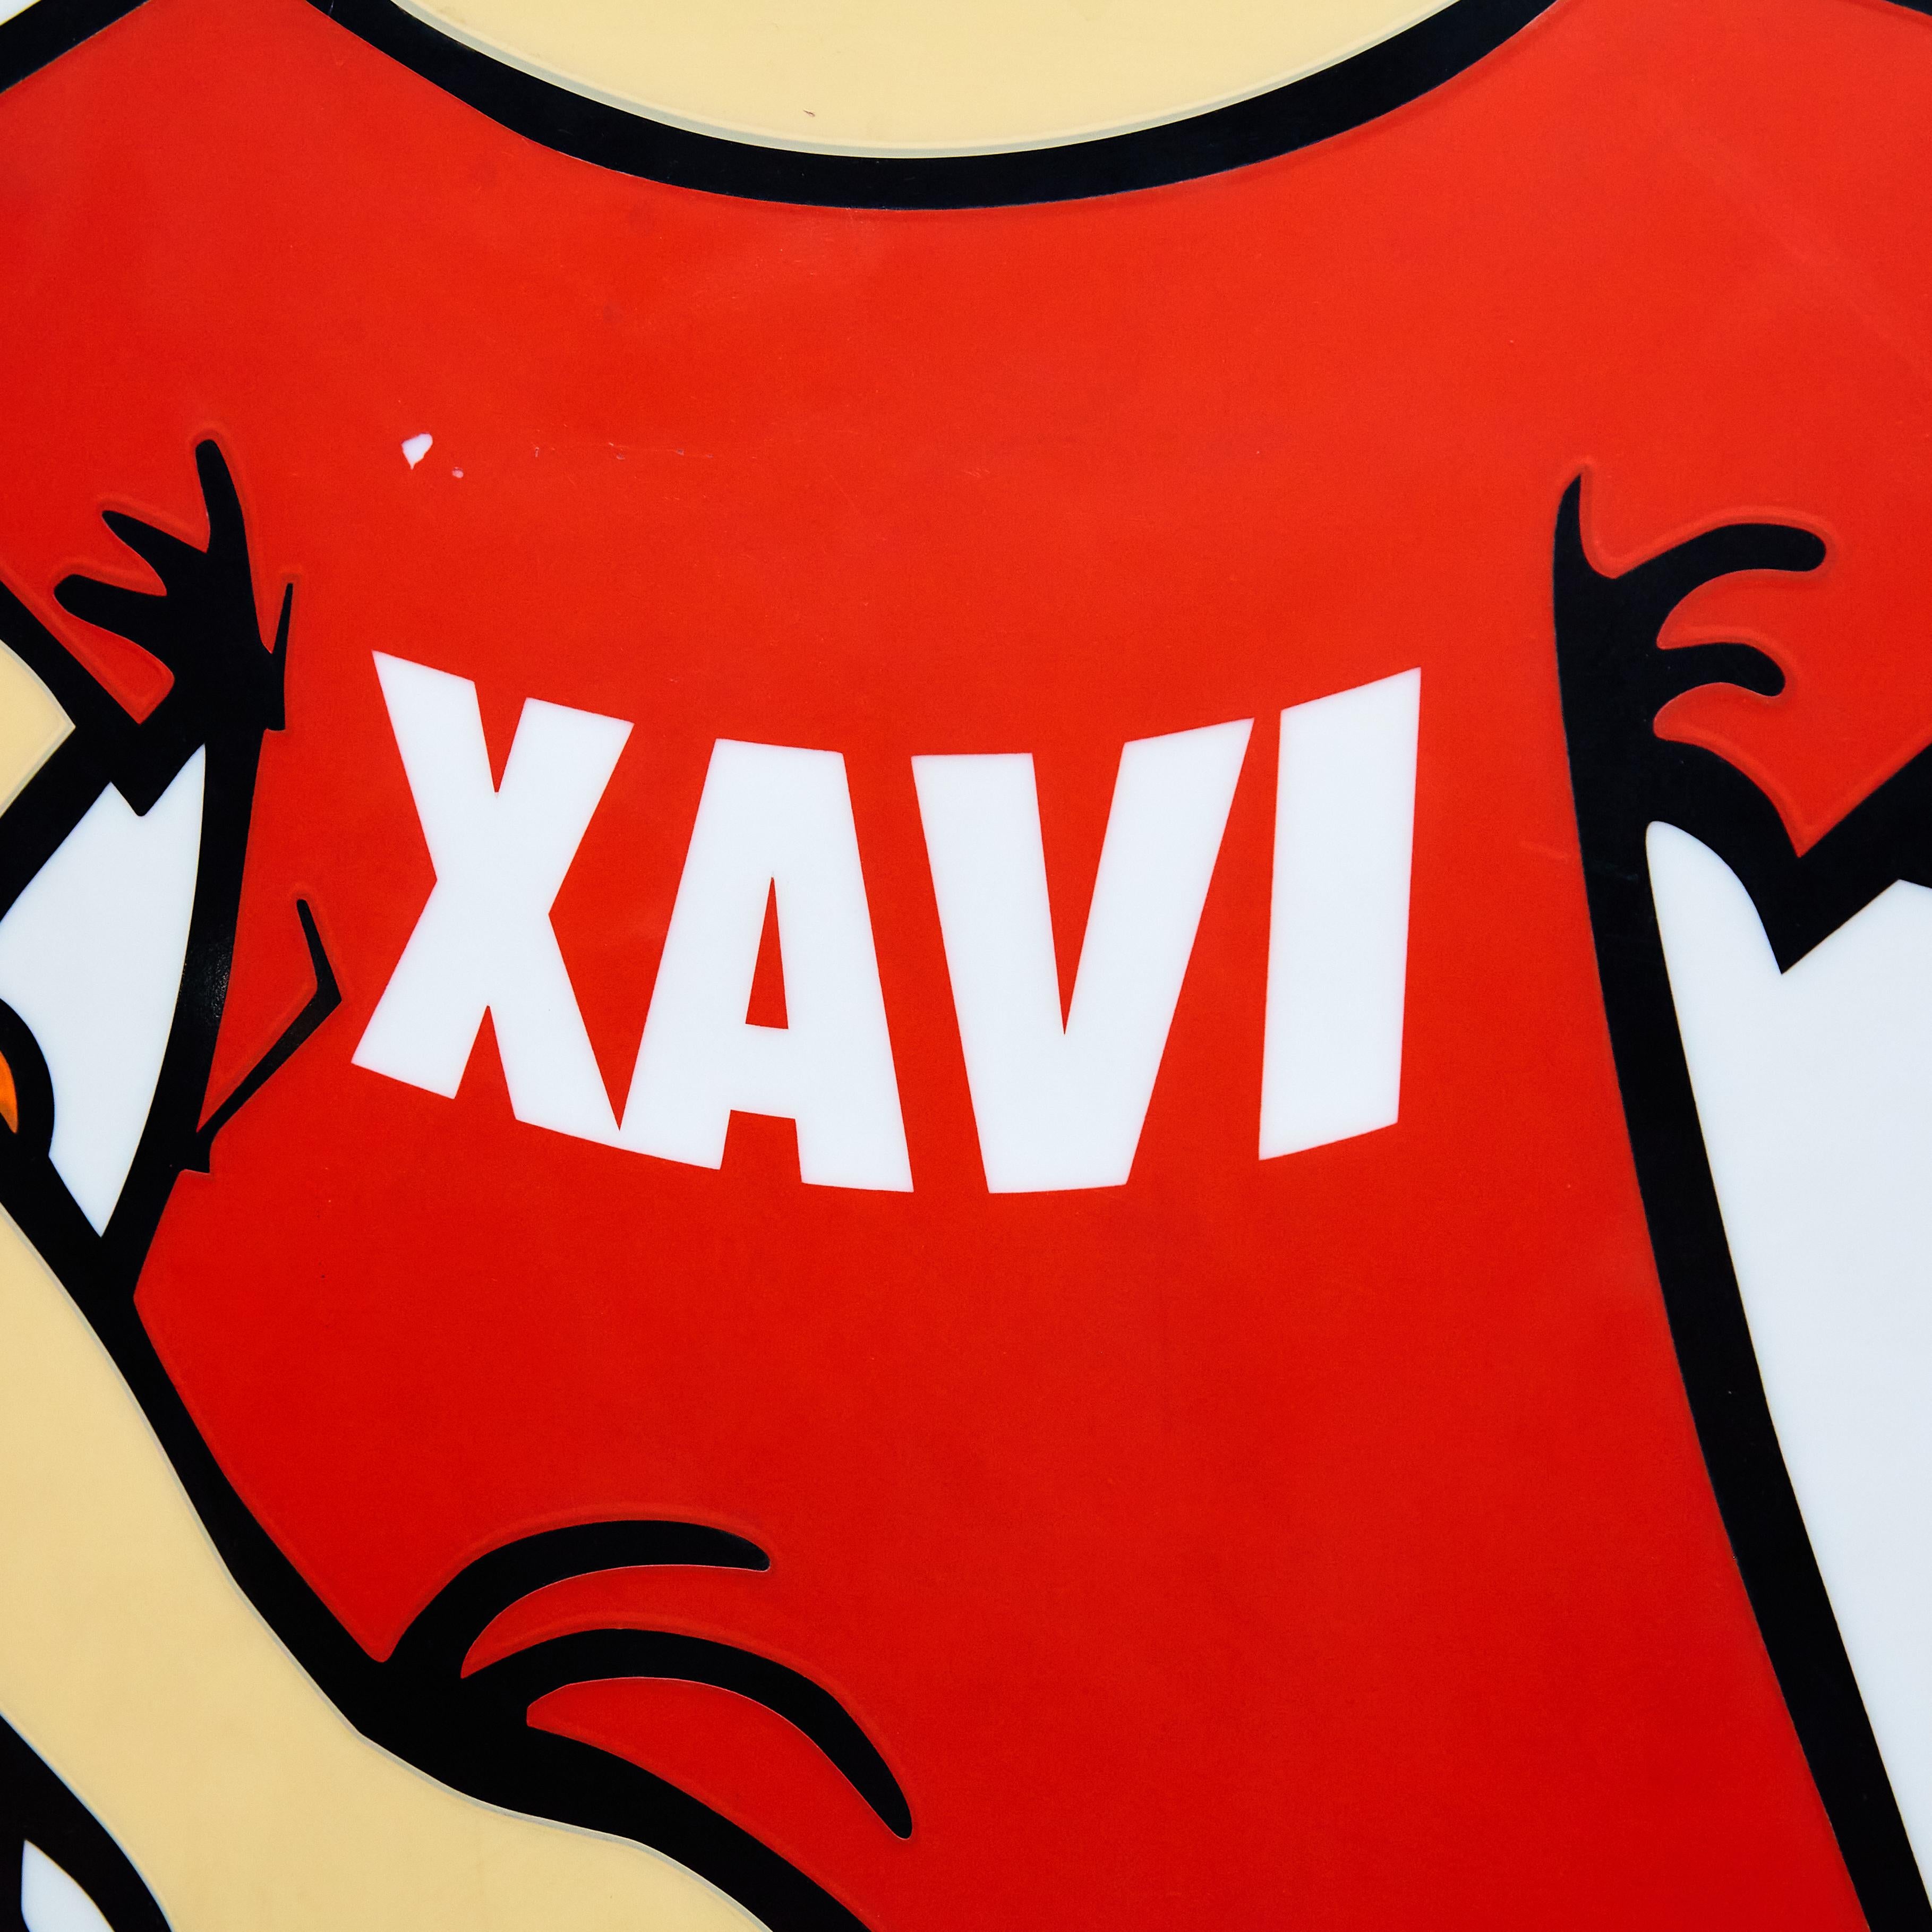 Supermarket Light Sign 'Xavi S'agaro', circa 1970 1